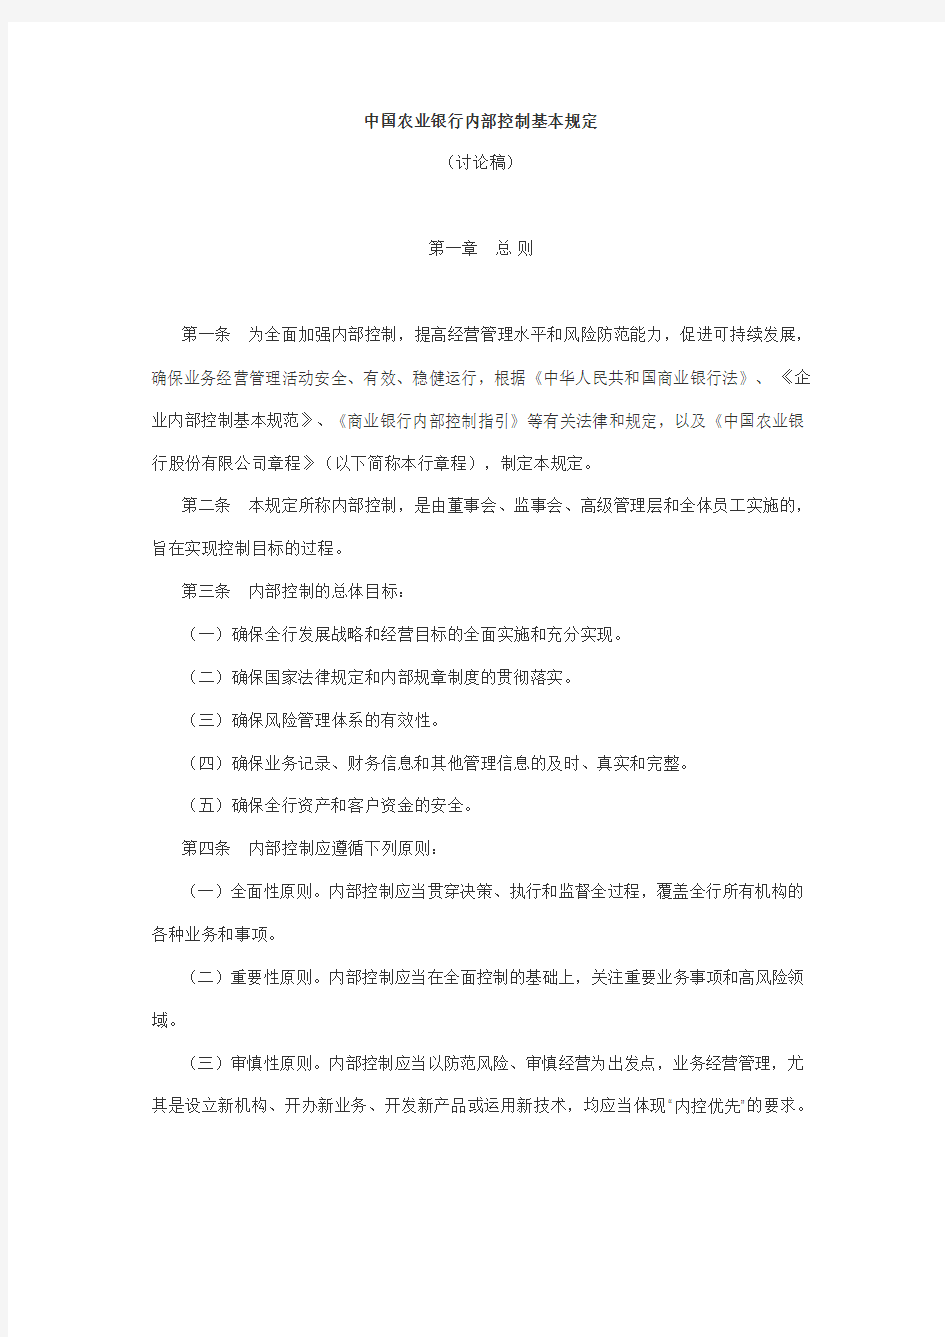 中国农业银行内部控制基本规定